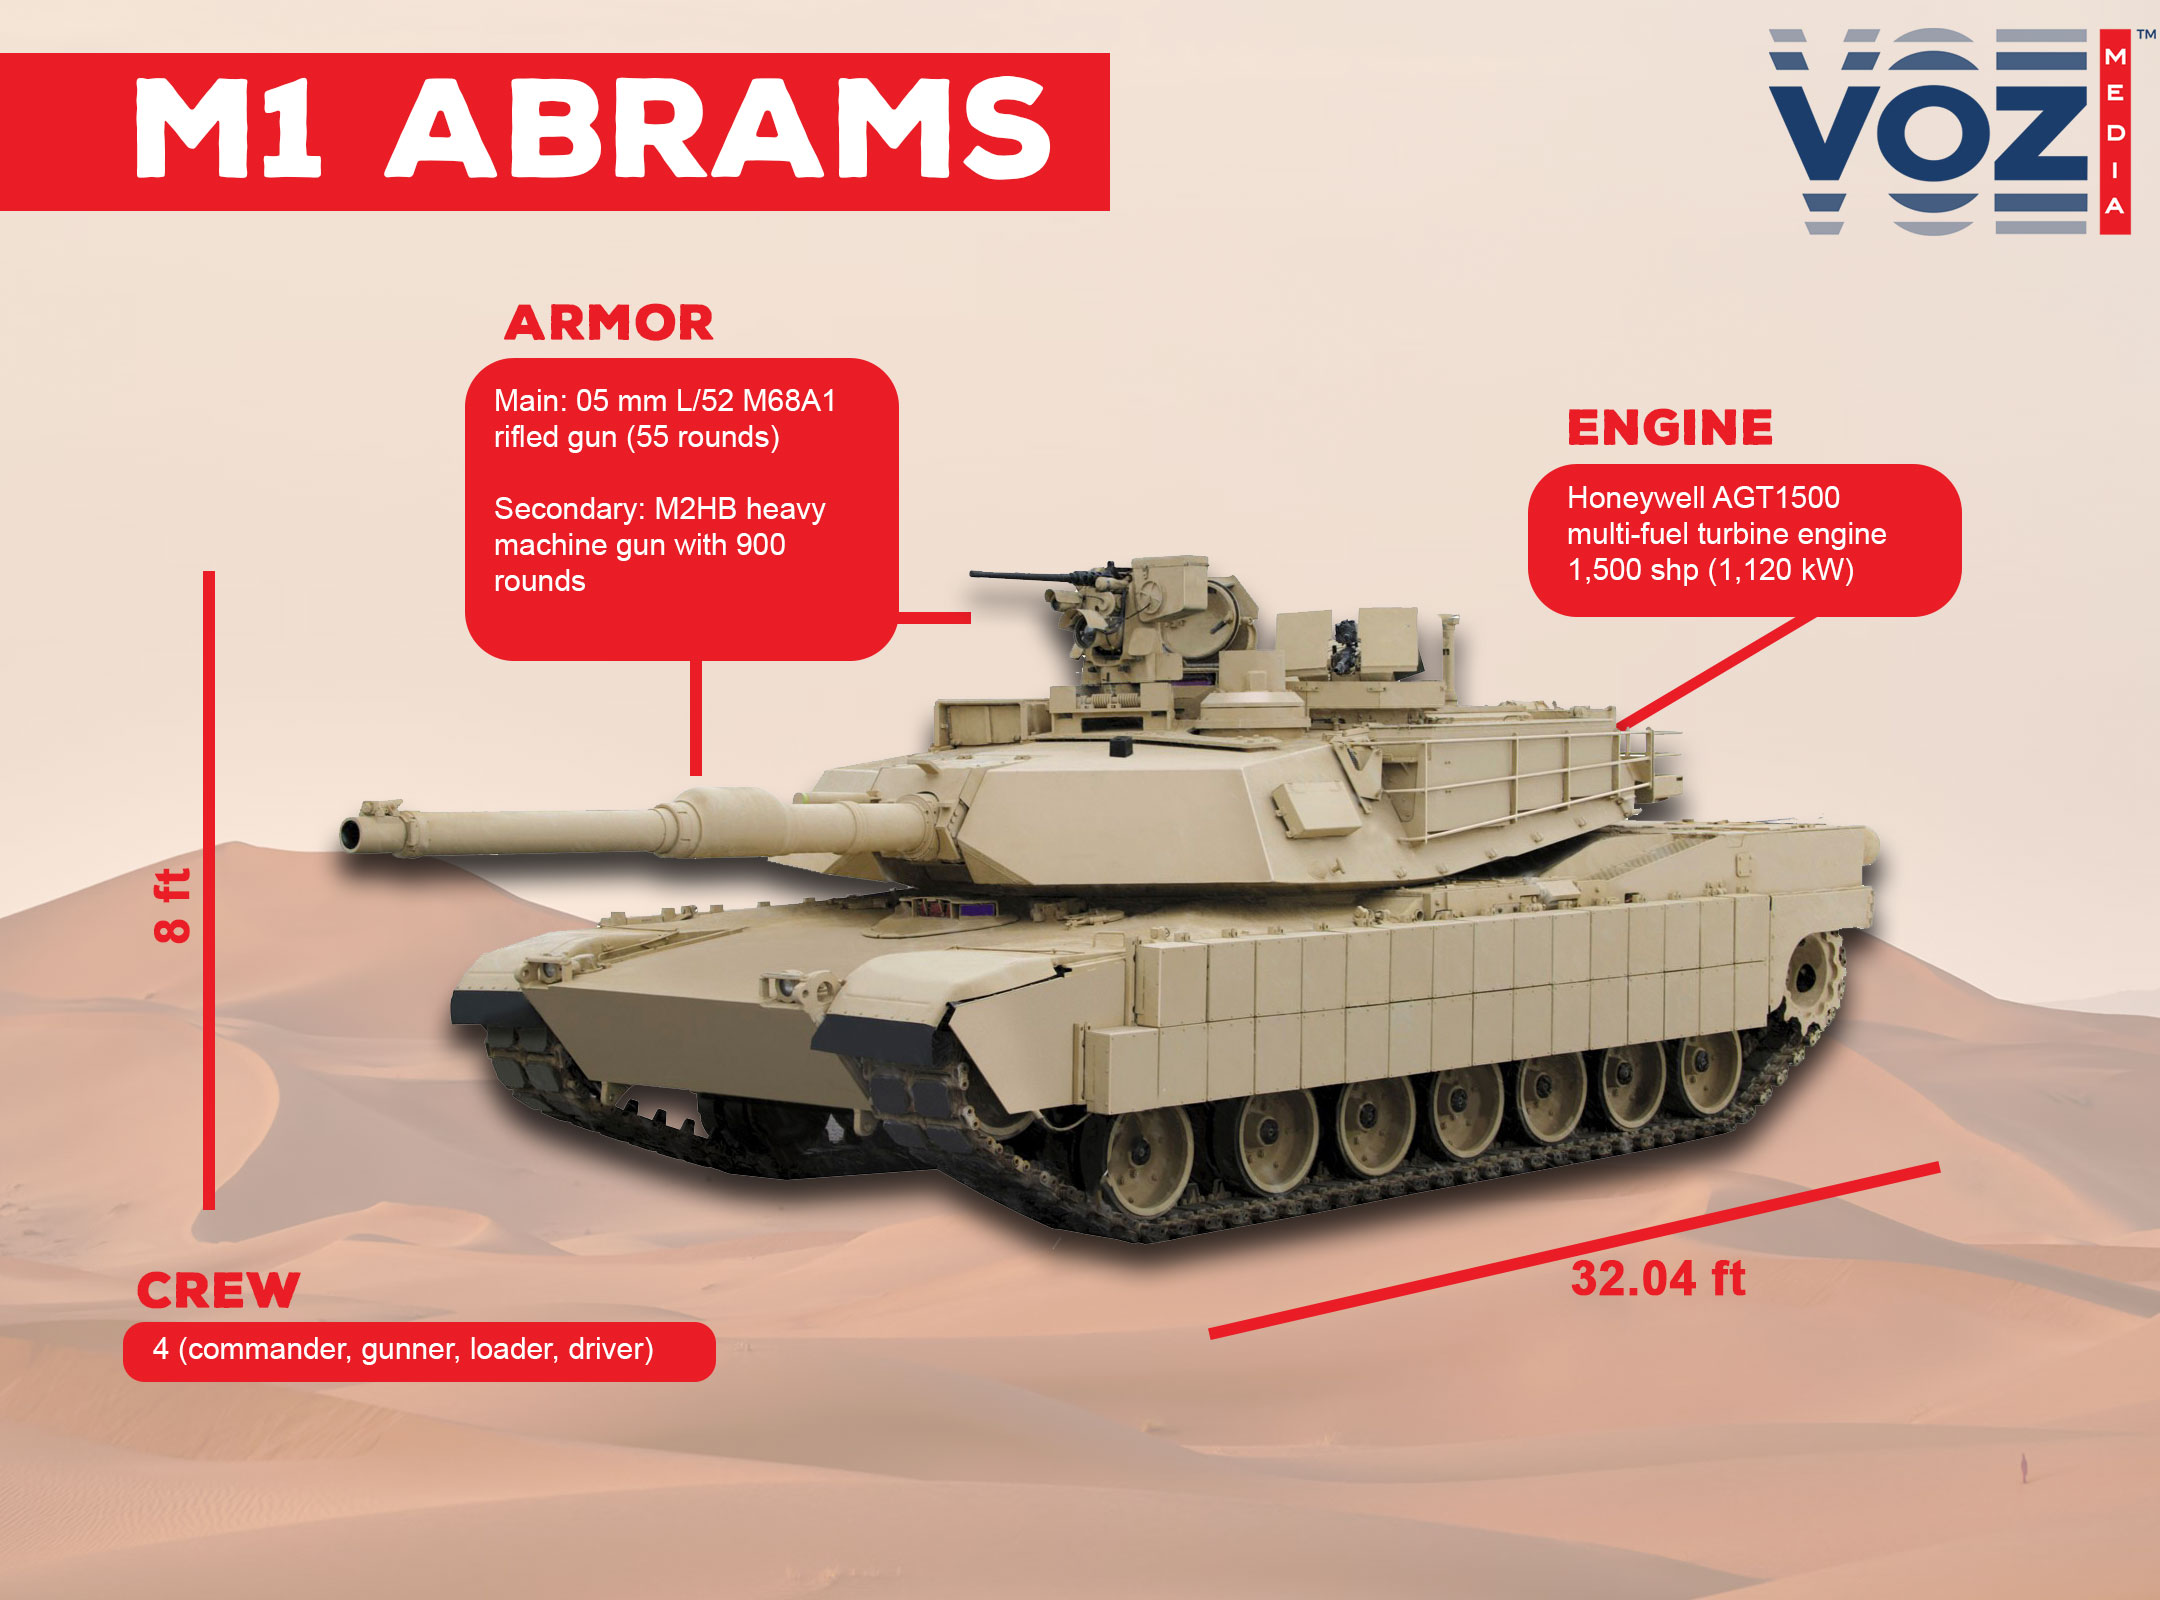 Tanque M1 Abrams